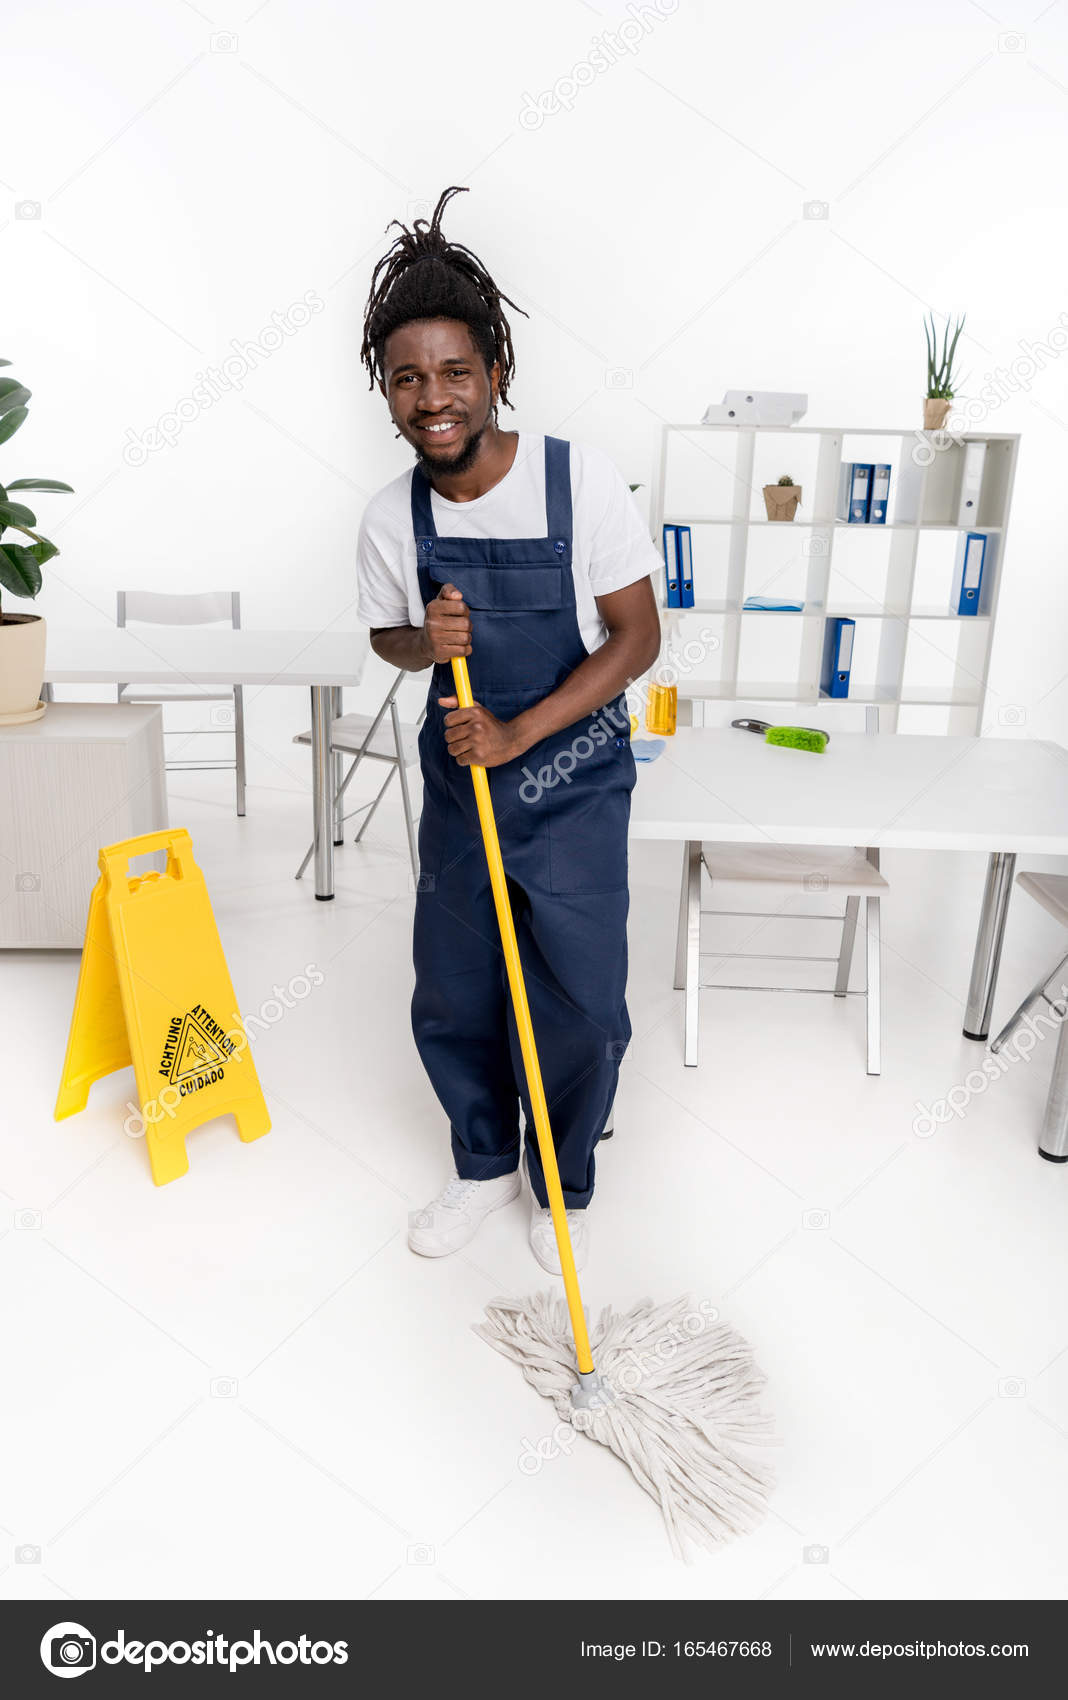 Op de loer liggen Vestiging Armoedig African american cleaner with mop Stock Photo by ©IgorVetushko 165467668